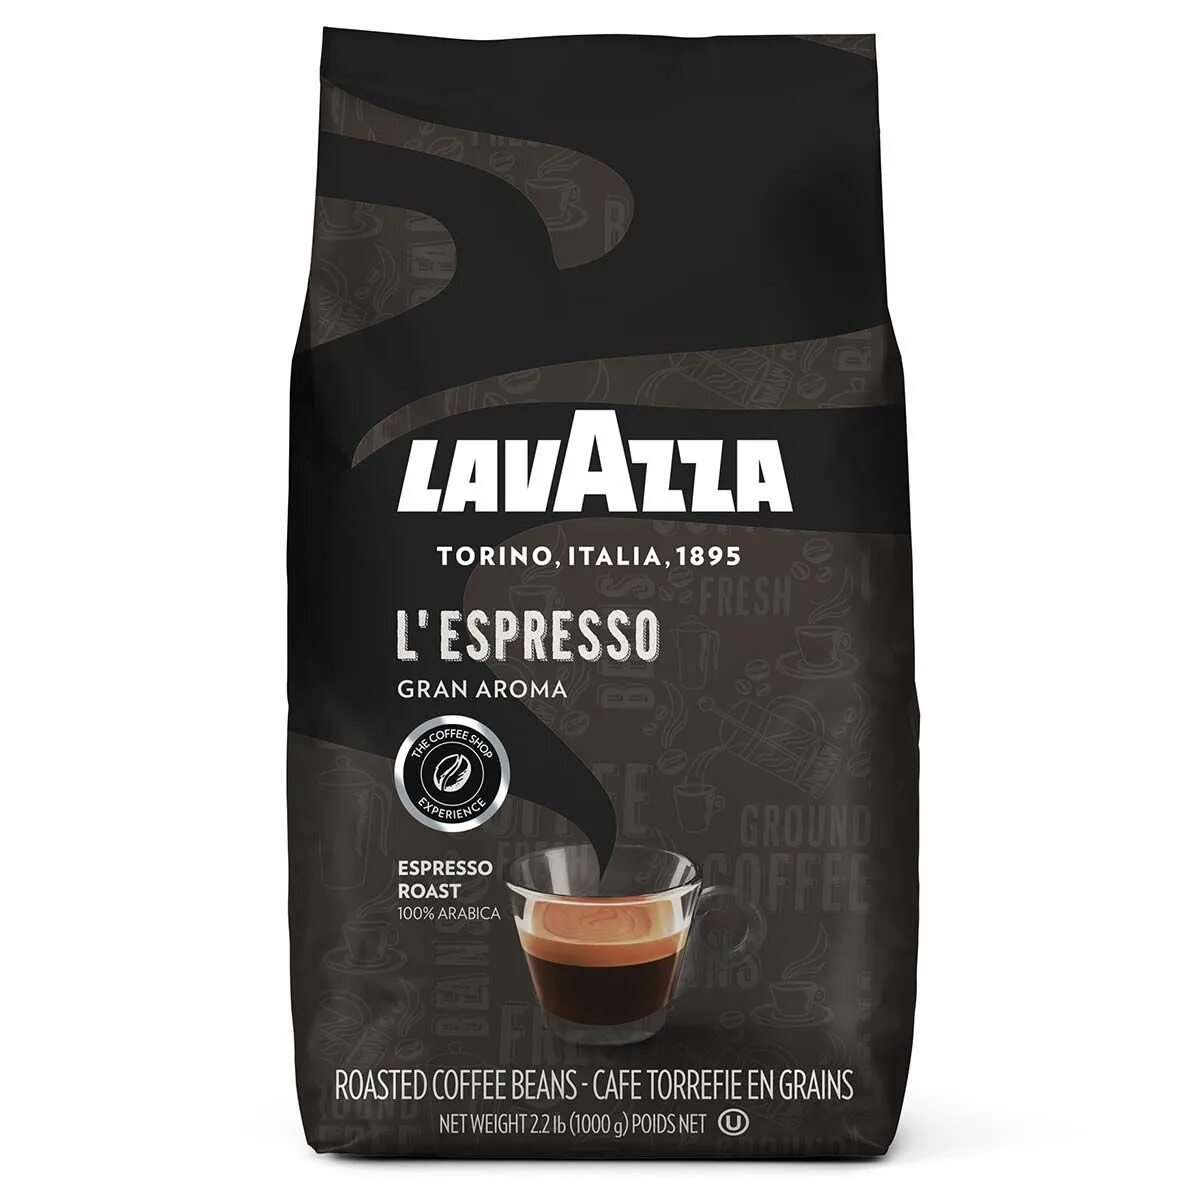 Дешевое кофе купить спб. Кофе в зернах Lavazza Espresso Barista. Кофе Lavazza Gran Aroma. Кофе в зернах "Lavazza Gran crema" 1 кг.. Кофе Lavazza Espresso в зернах 1 кг.